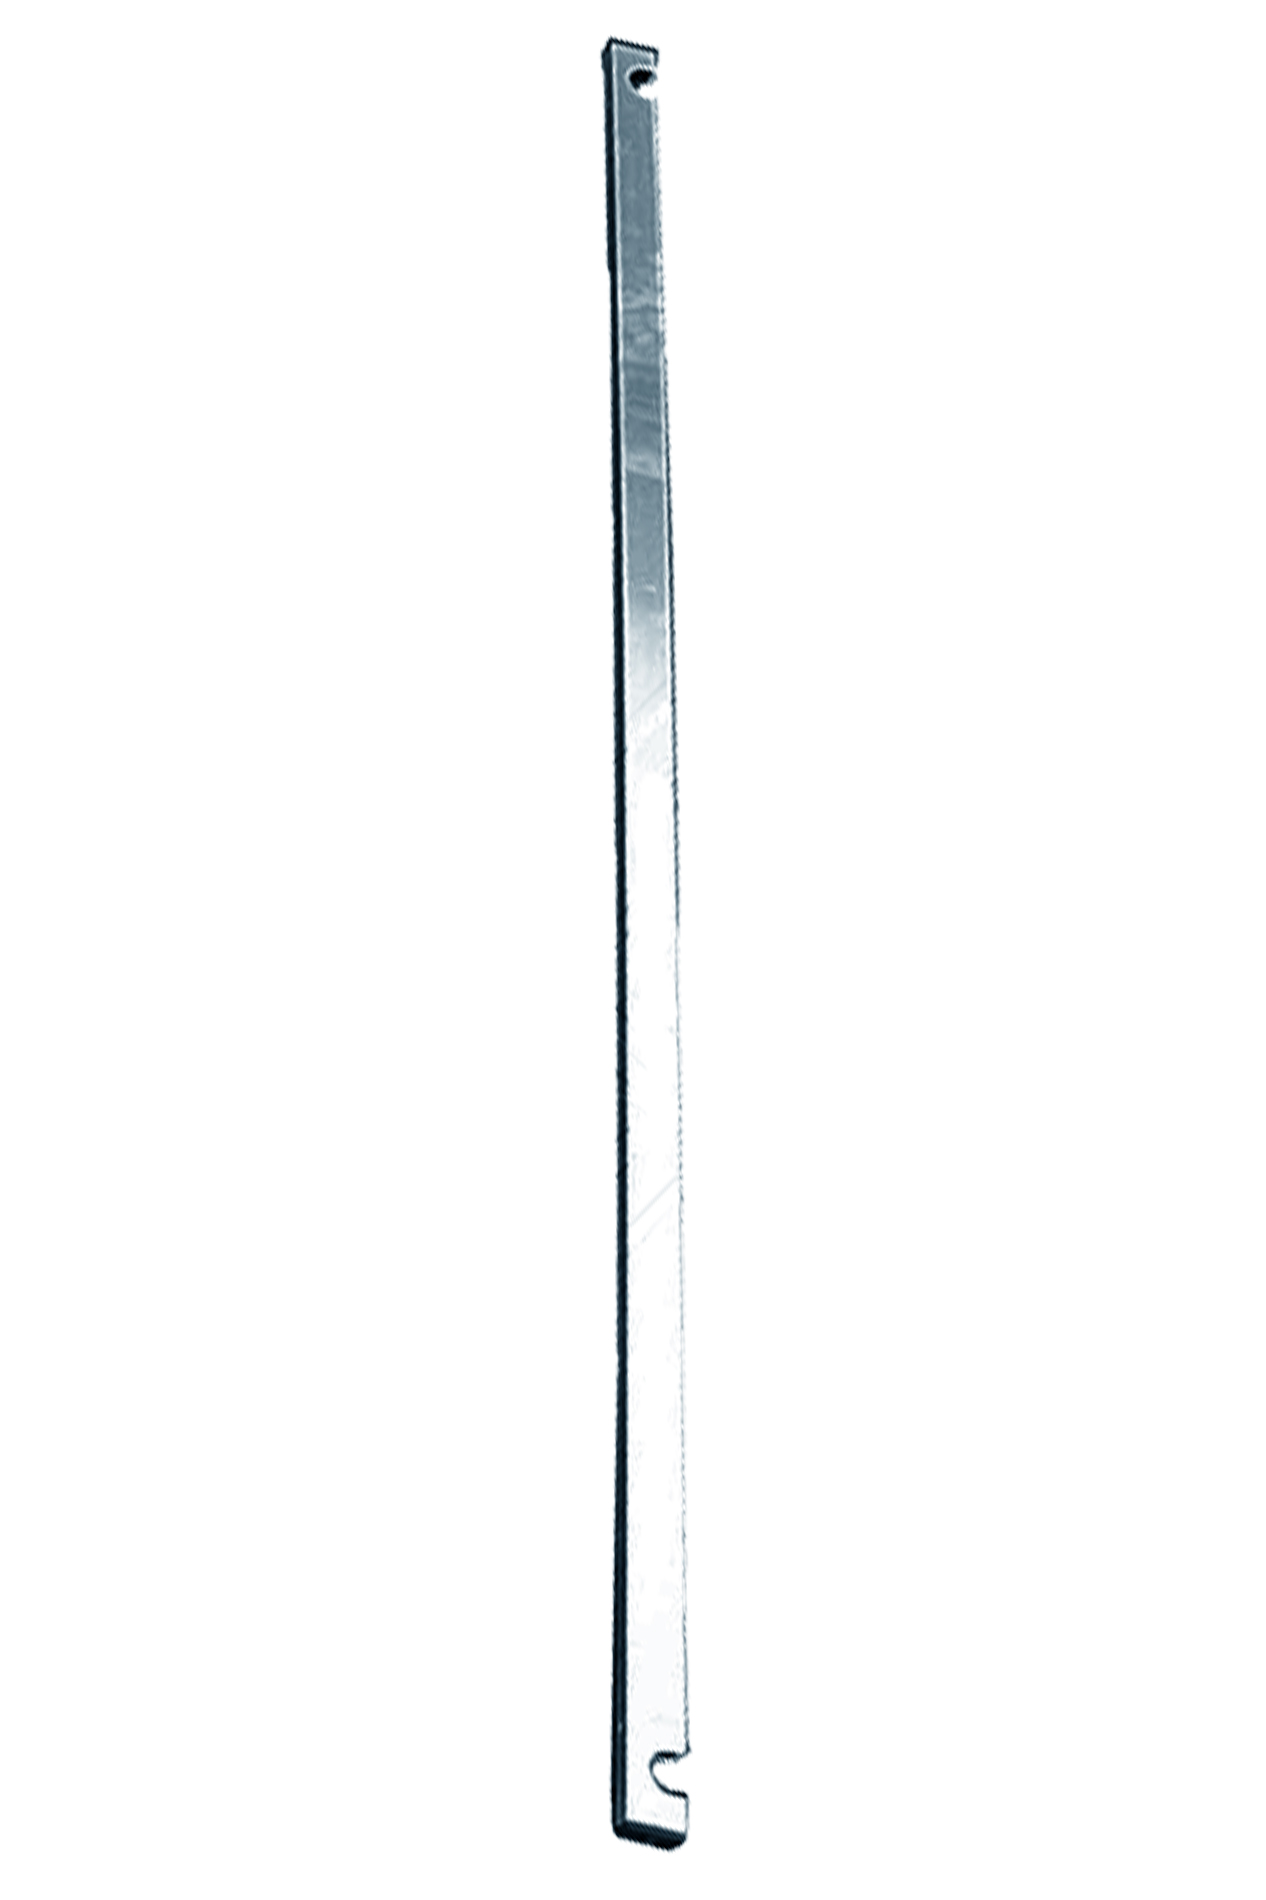 Дополнительное изображение Stabilo серии 1000 рабочая высота 9,2 м, размер площадки (3x0.75 м)